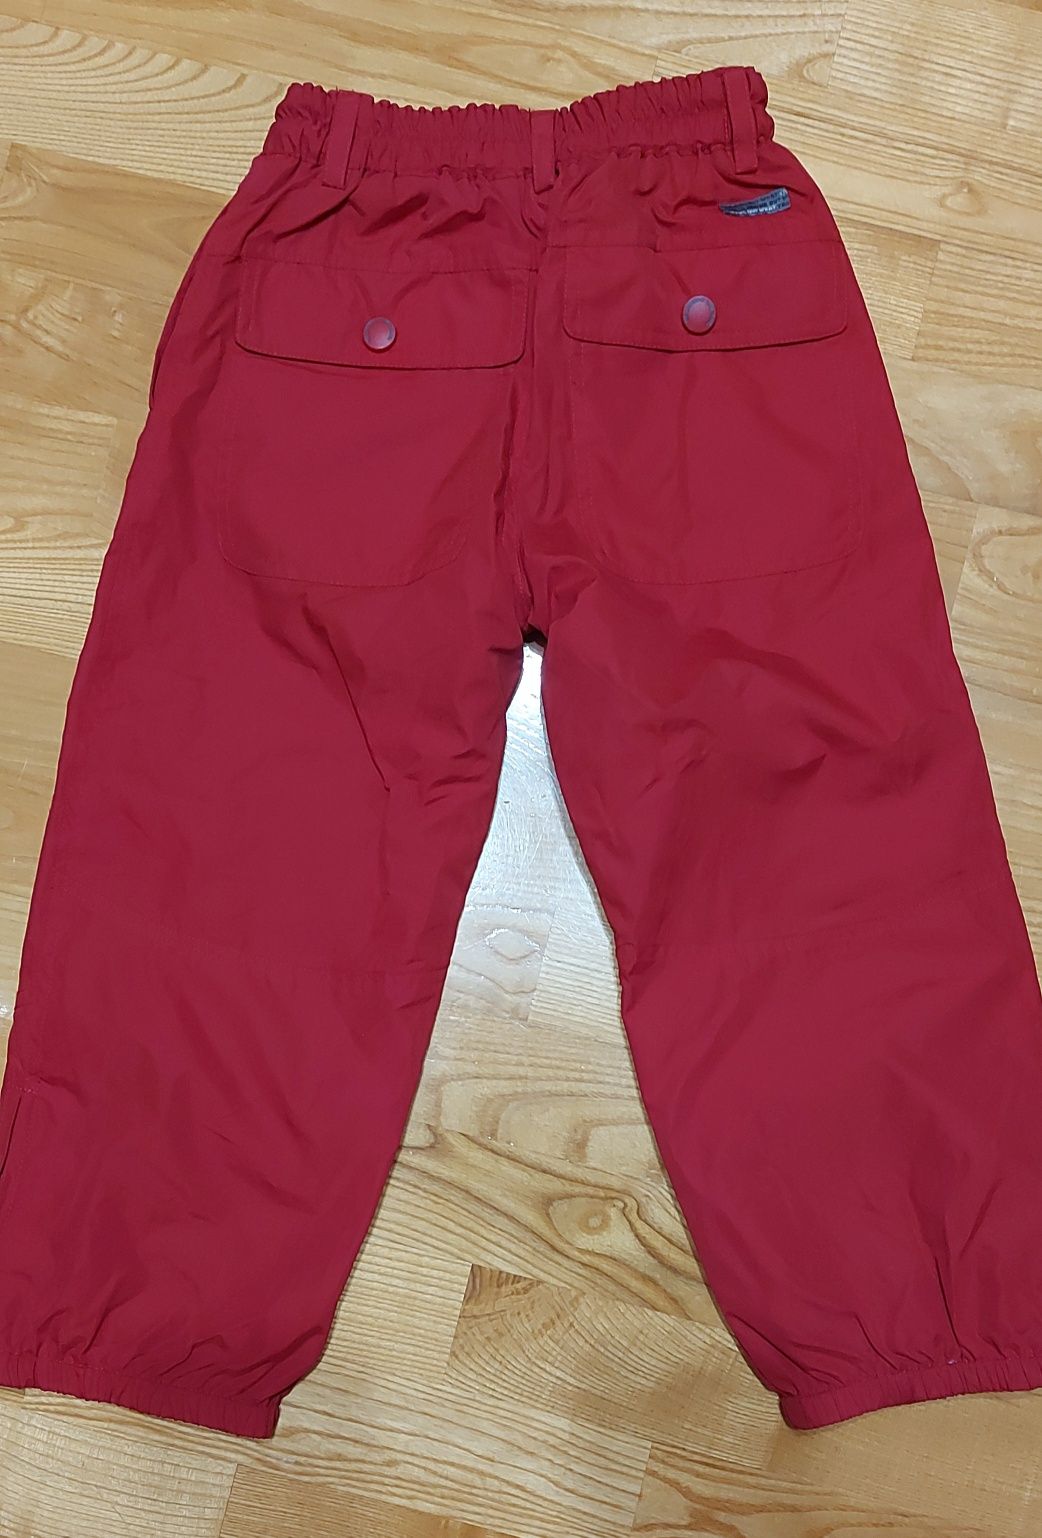 Spodnie chłopięce na podszewce H&M r. 110